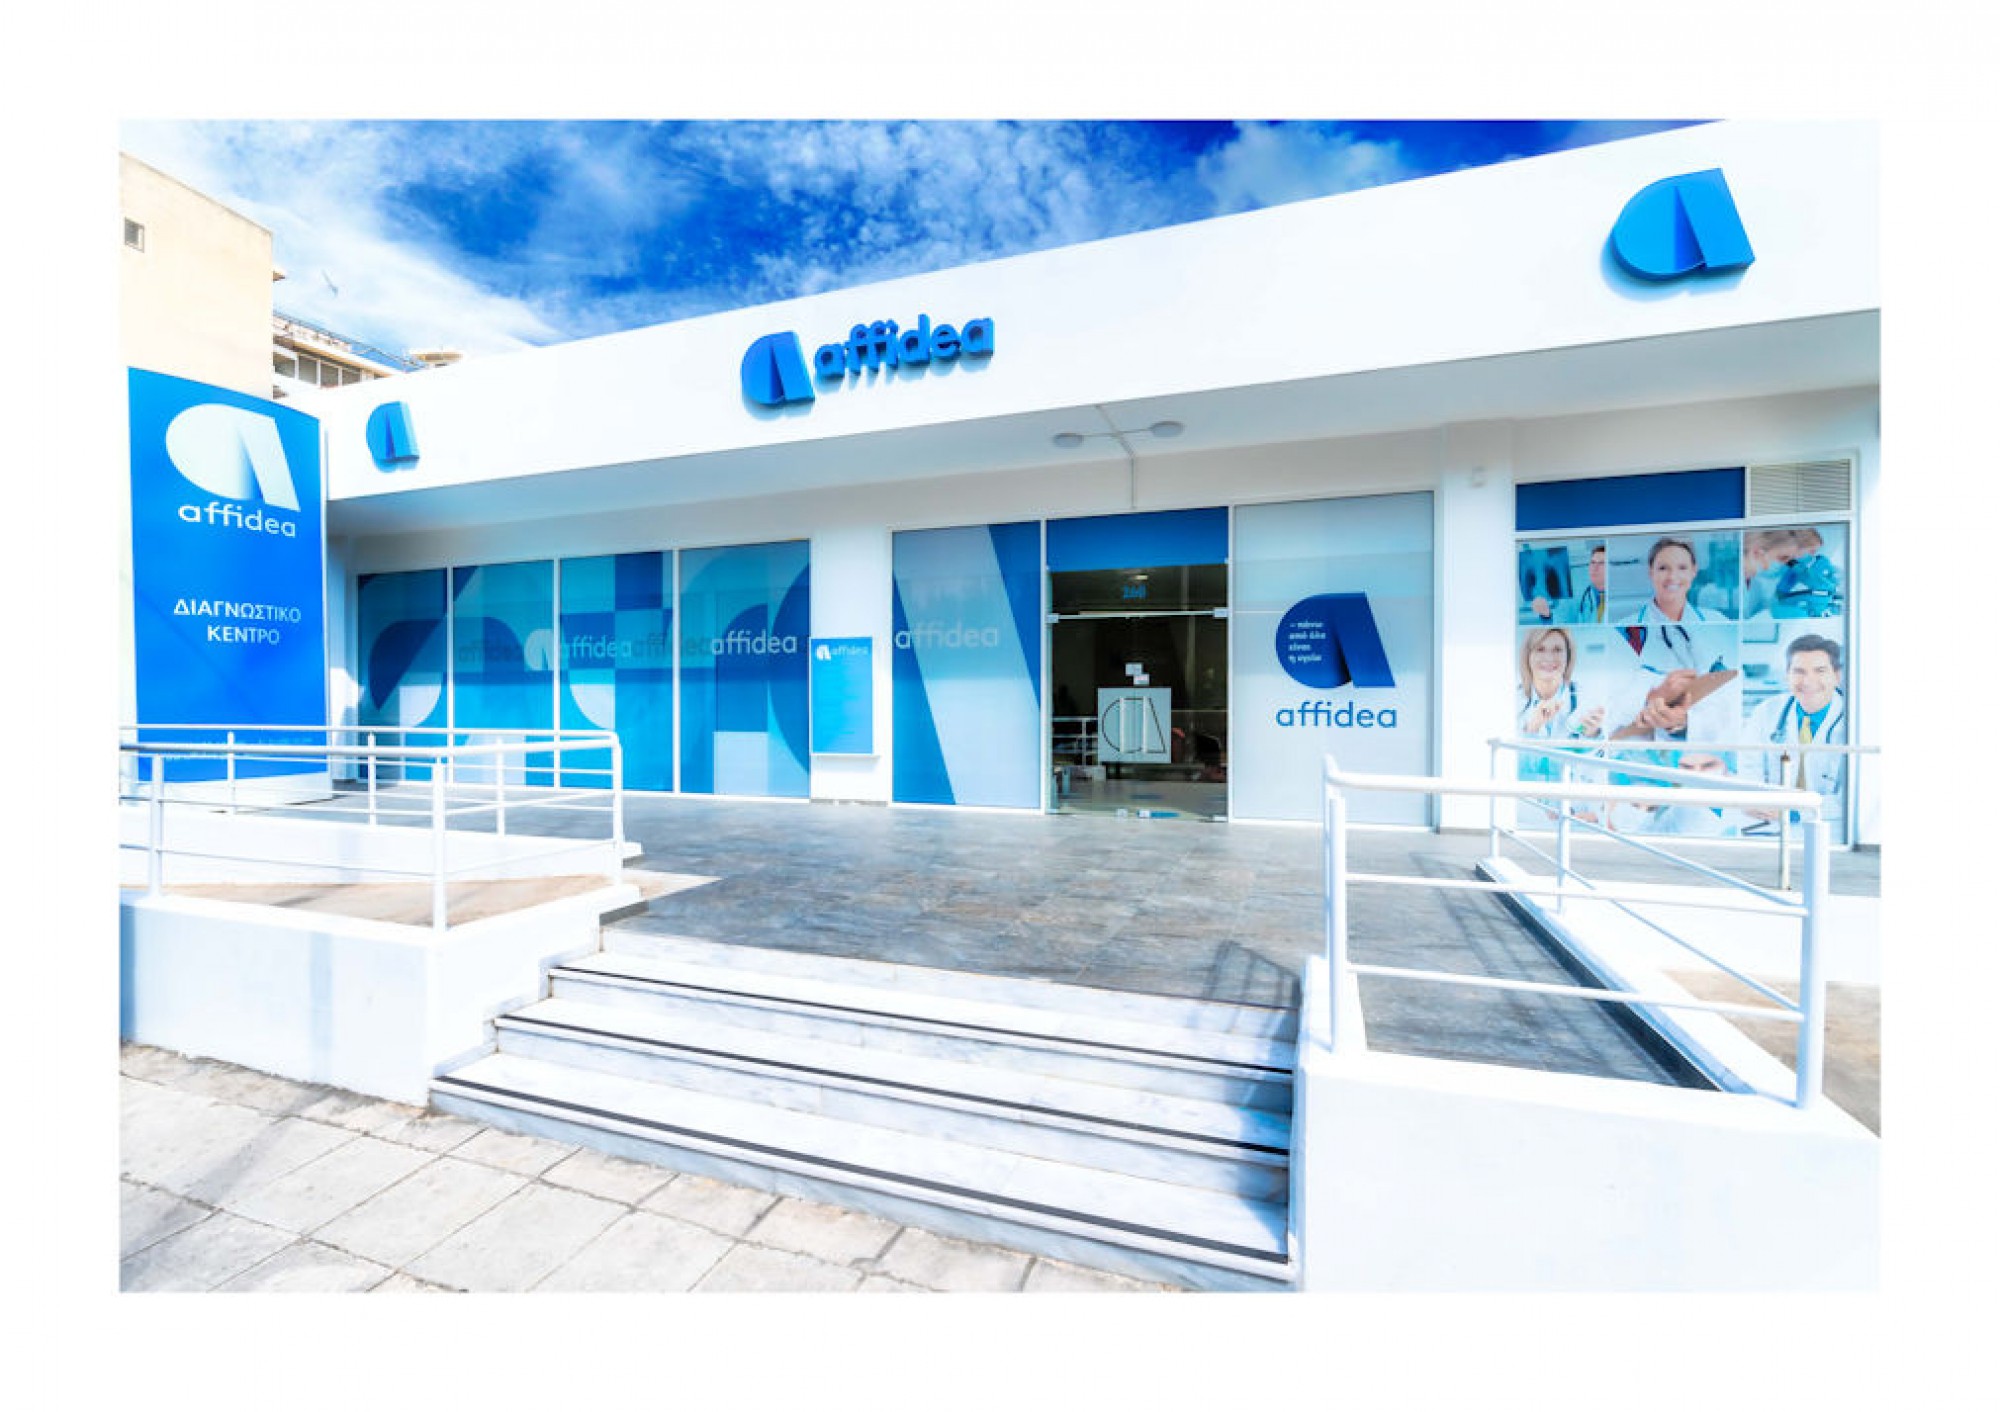 H Groupe Bruxelles Lambert εξαγόρασε την Affidea – Deal 1 δισ. ευρώ